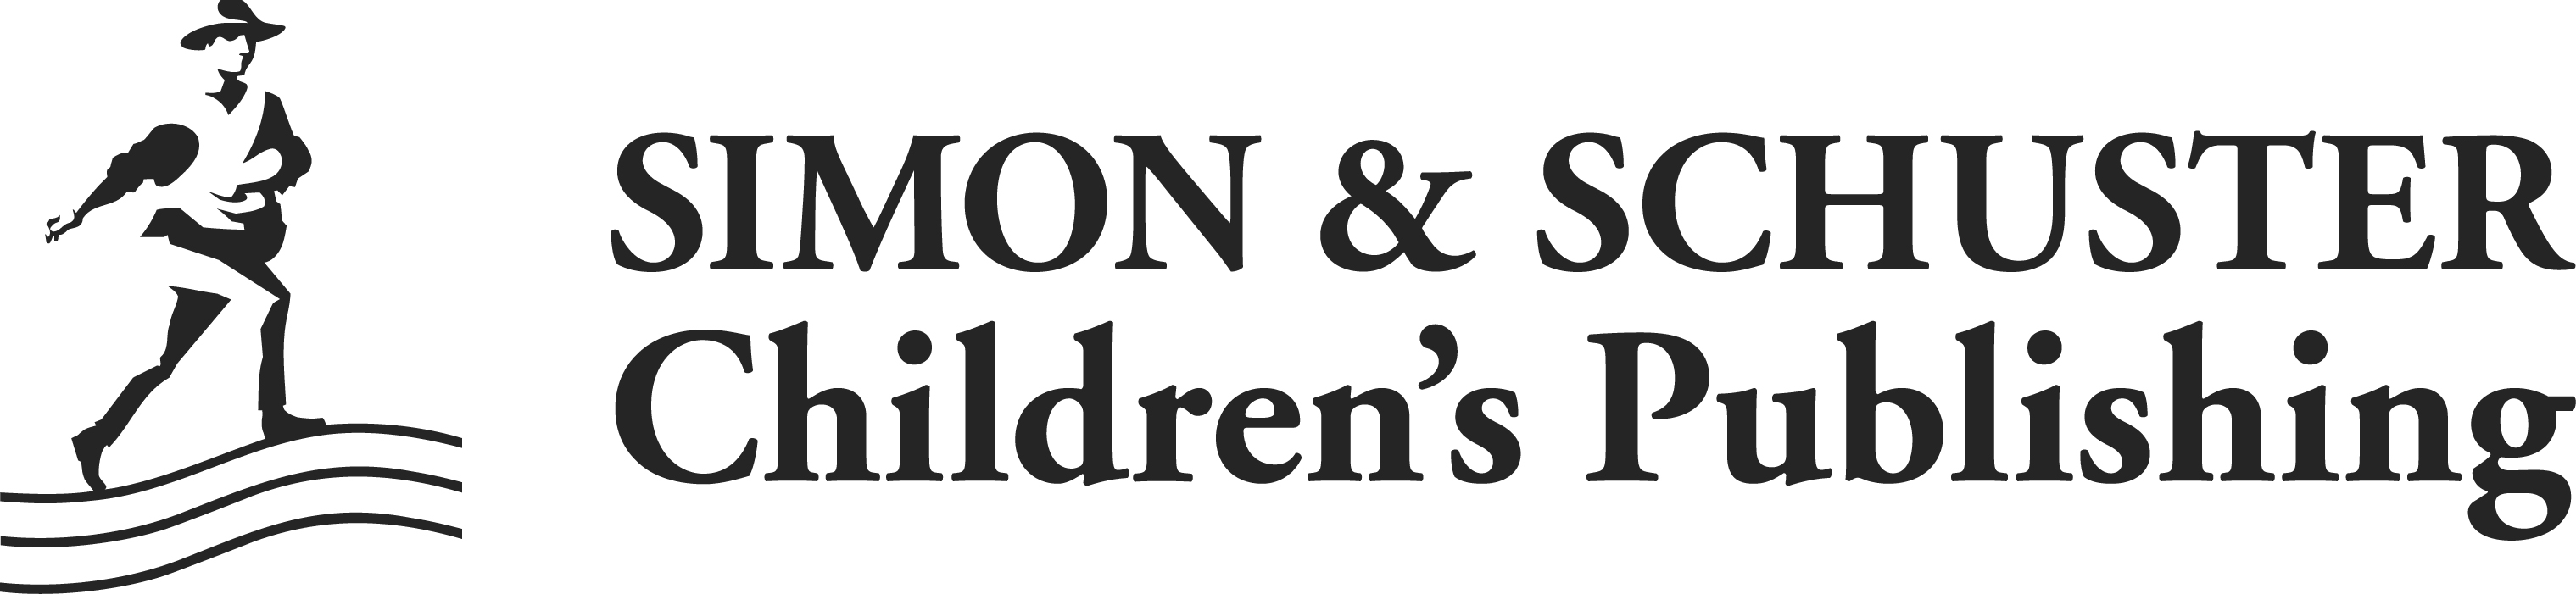 Simon & Schuster Children’s Publishing